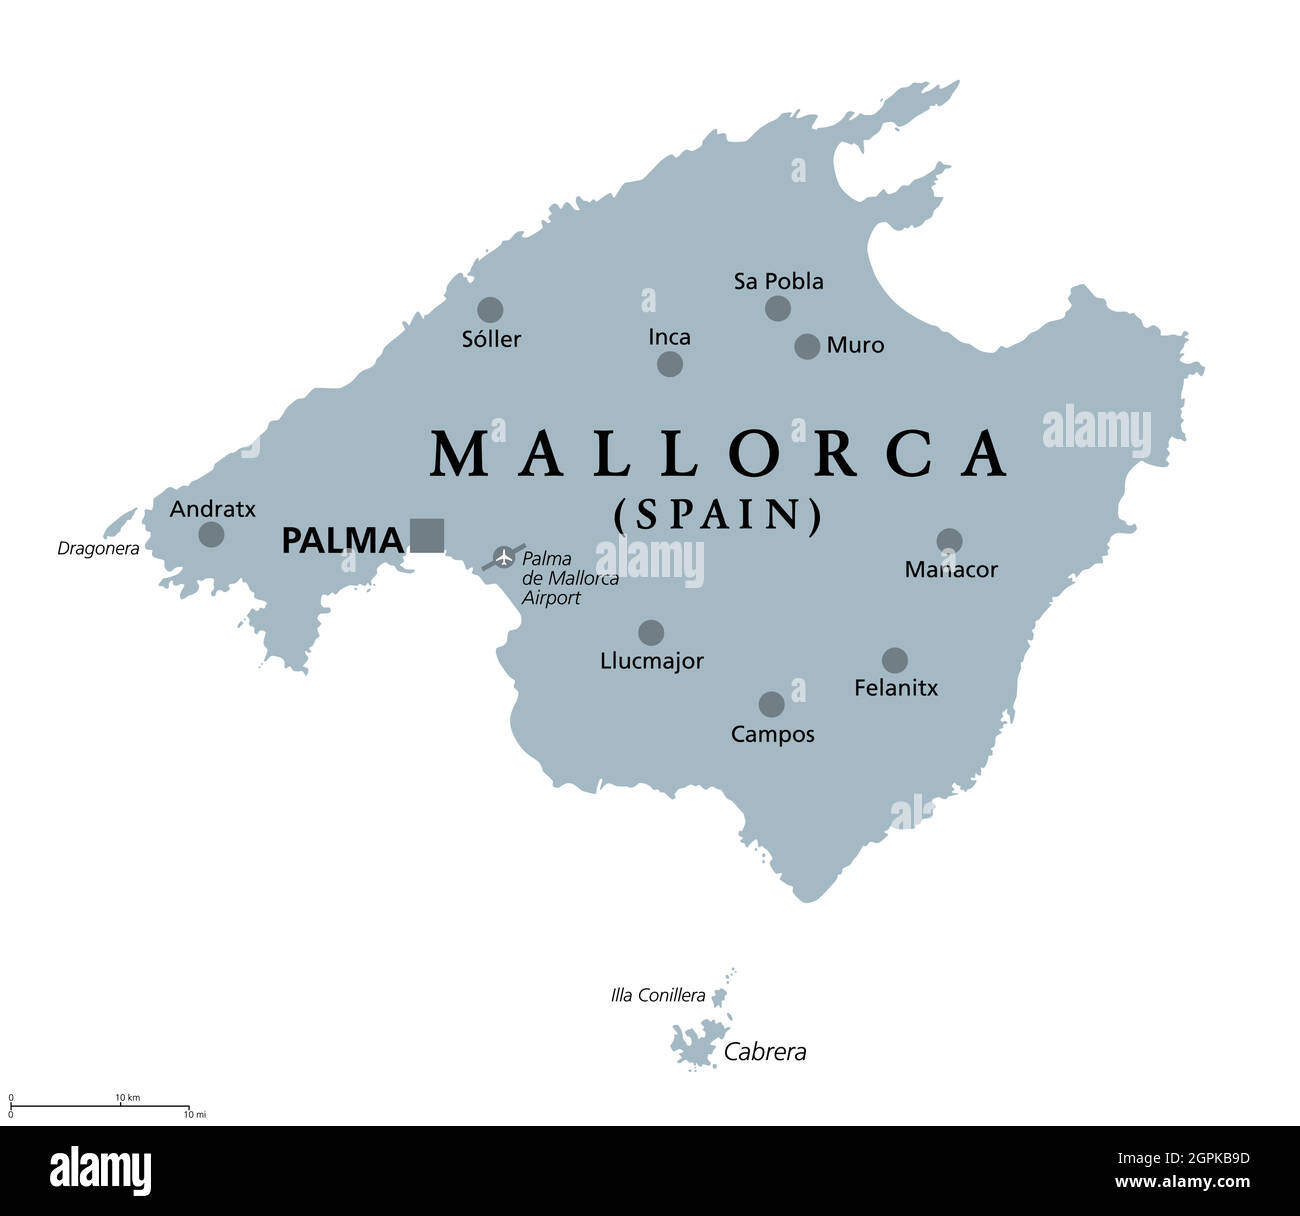 Mallorca, Mallorca graue politische Landkarte Stock Vektor